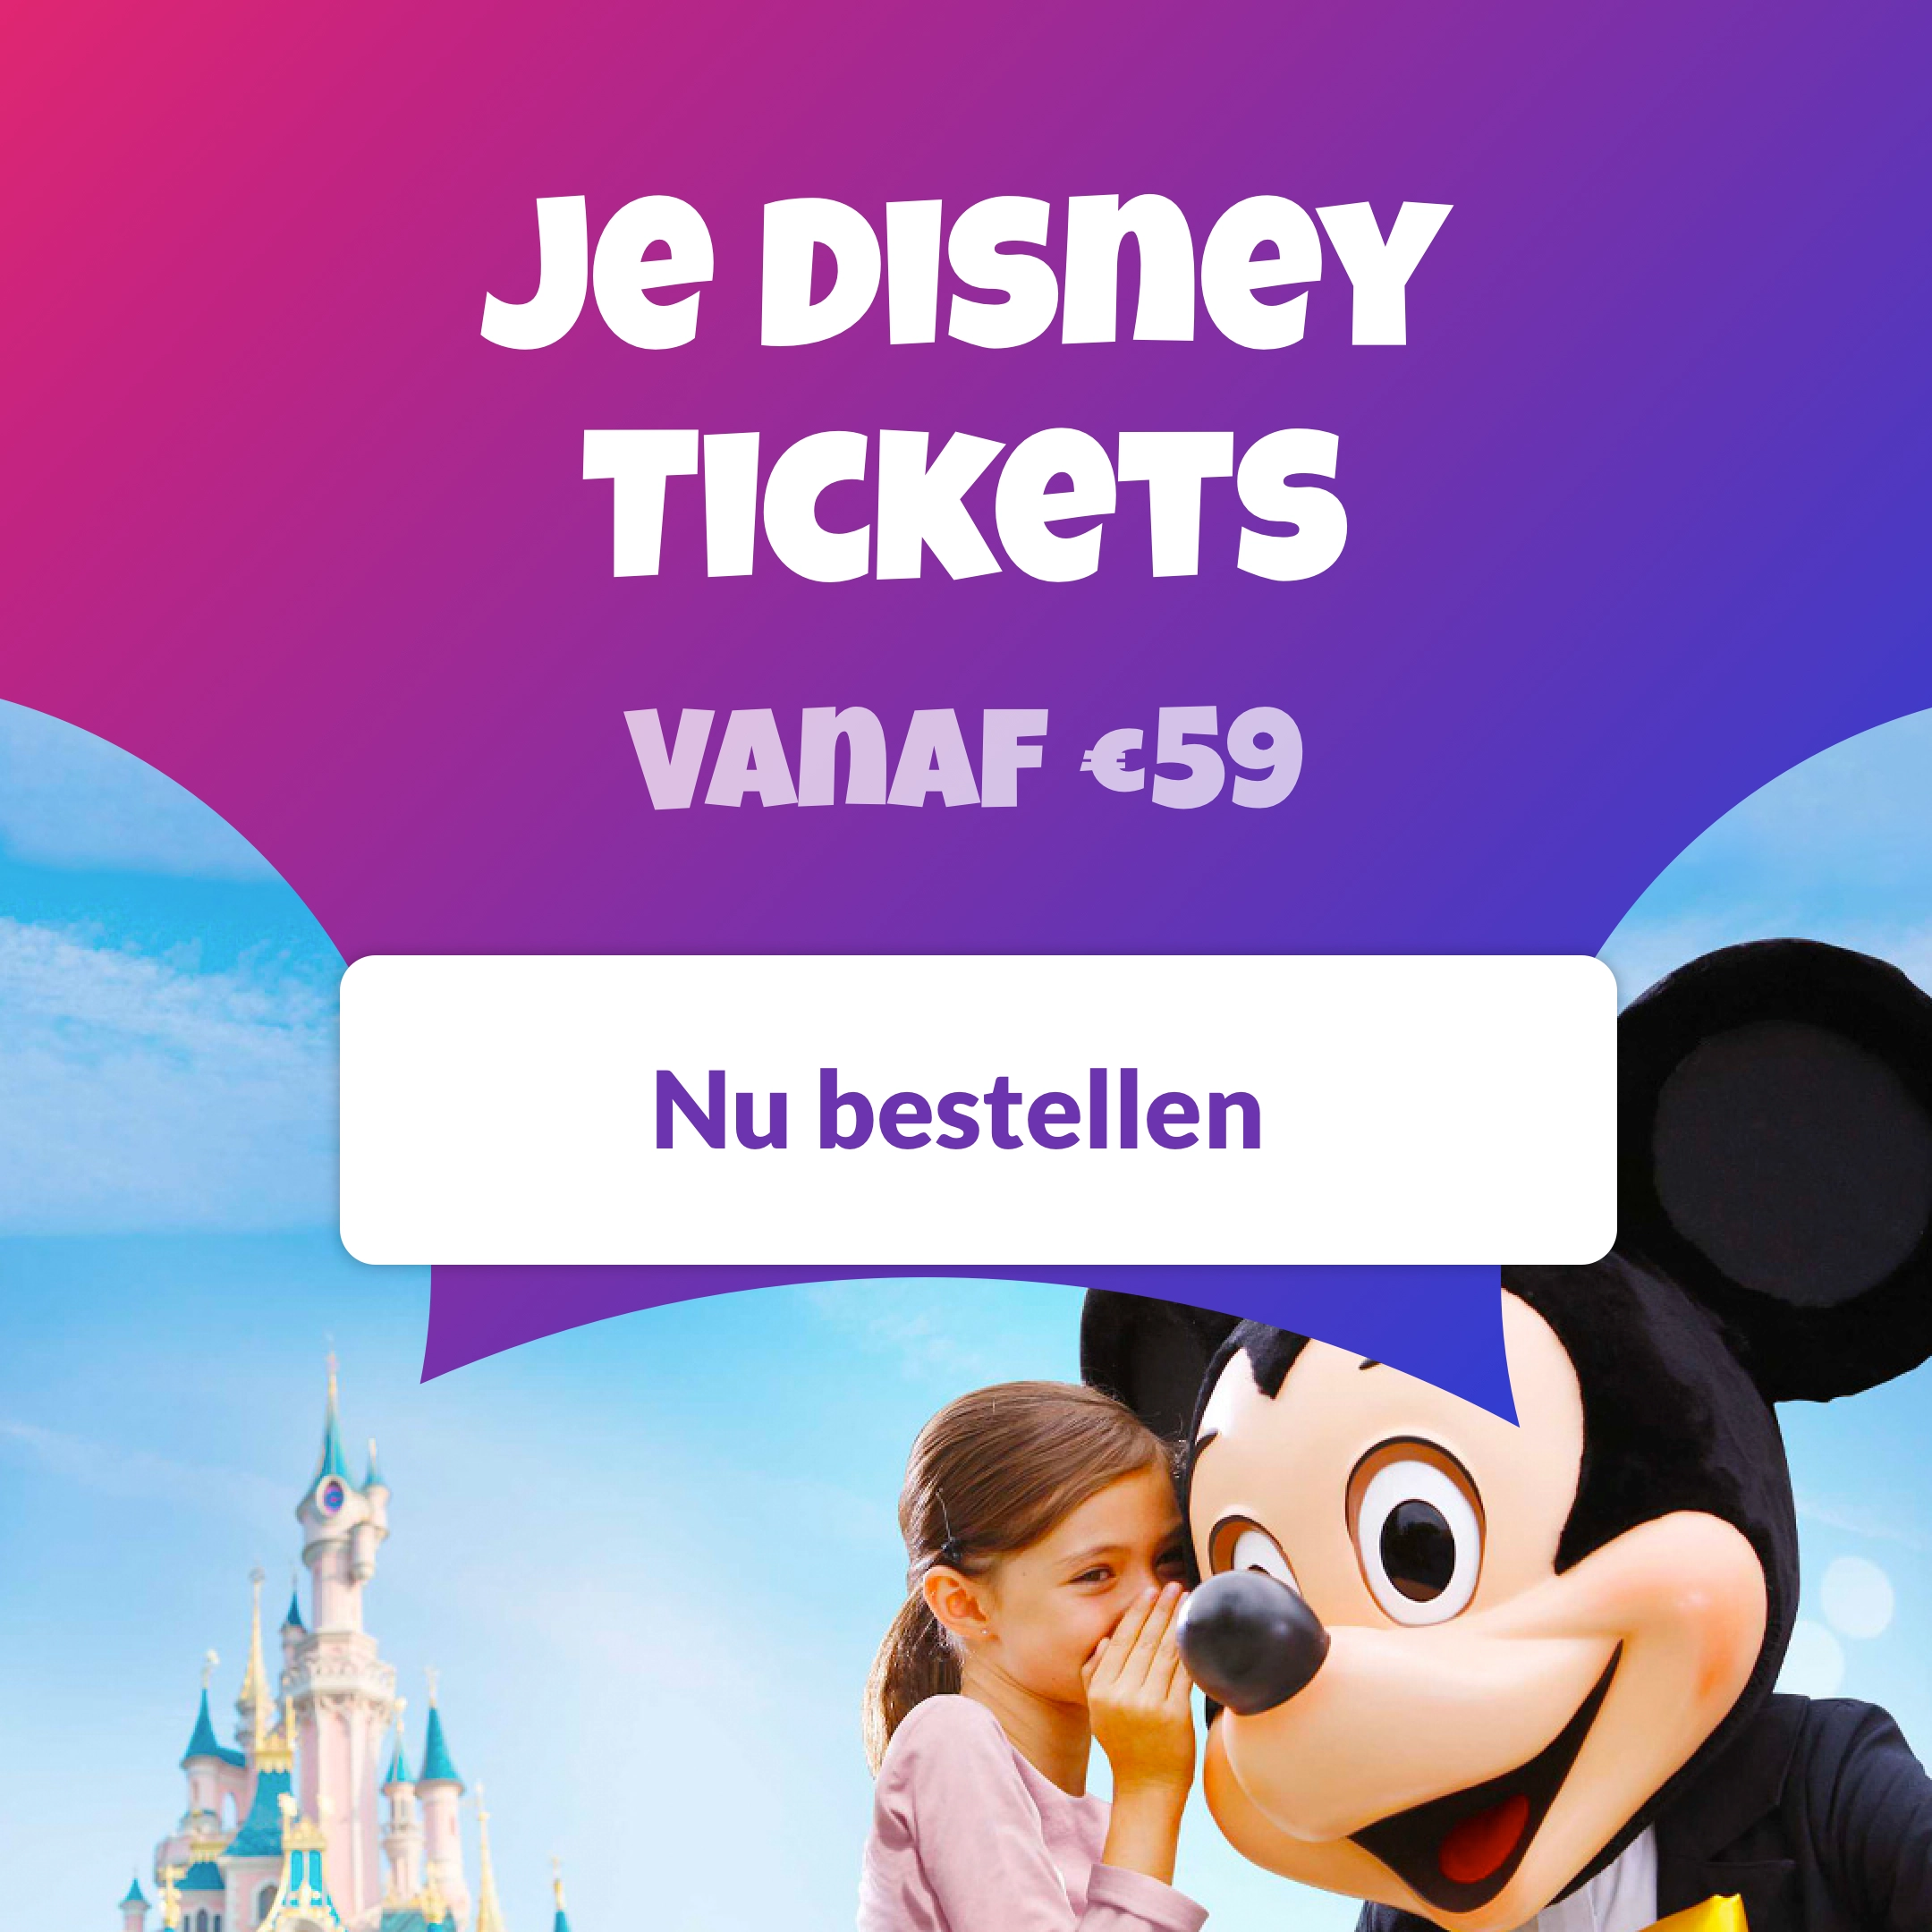 Je tickets voor Disneyland Paris vanaf €59